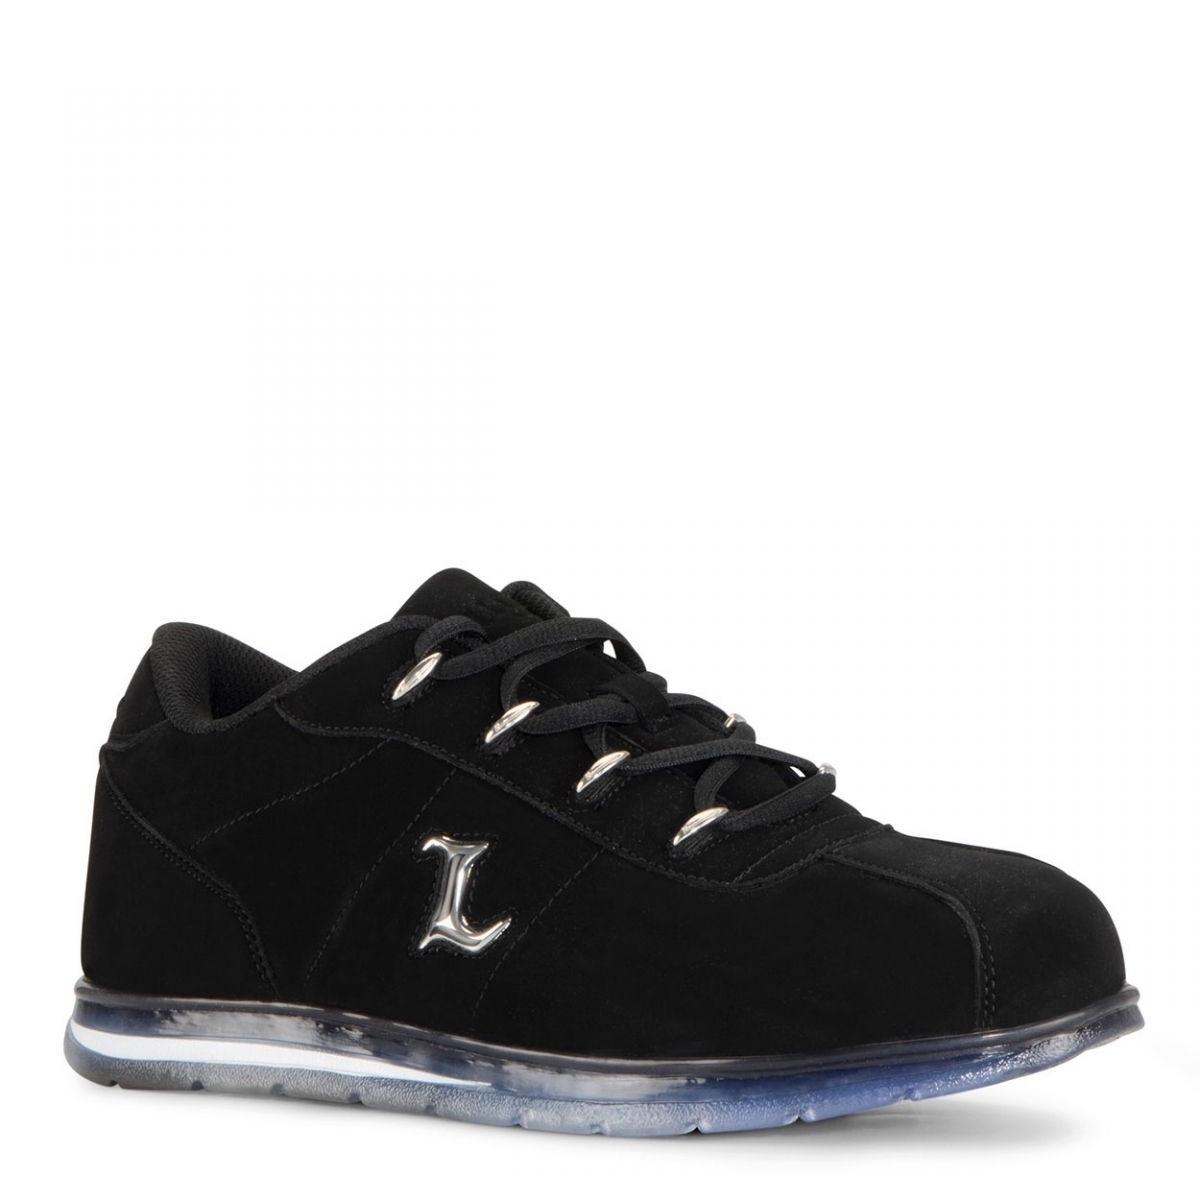 Lugz Men's Zrocs DX Sneaker Black/Clear - MZRCID-0048 BLACK/CLEAR - BLACK/CLEAR, 11